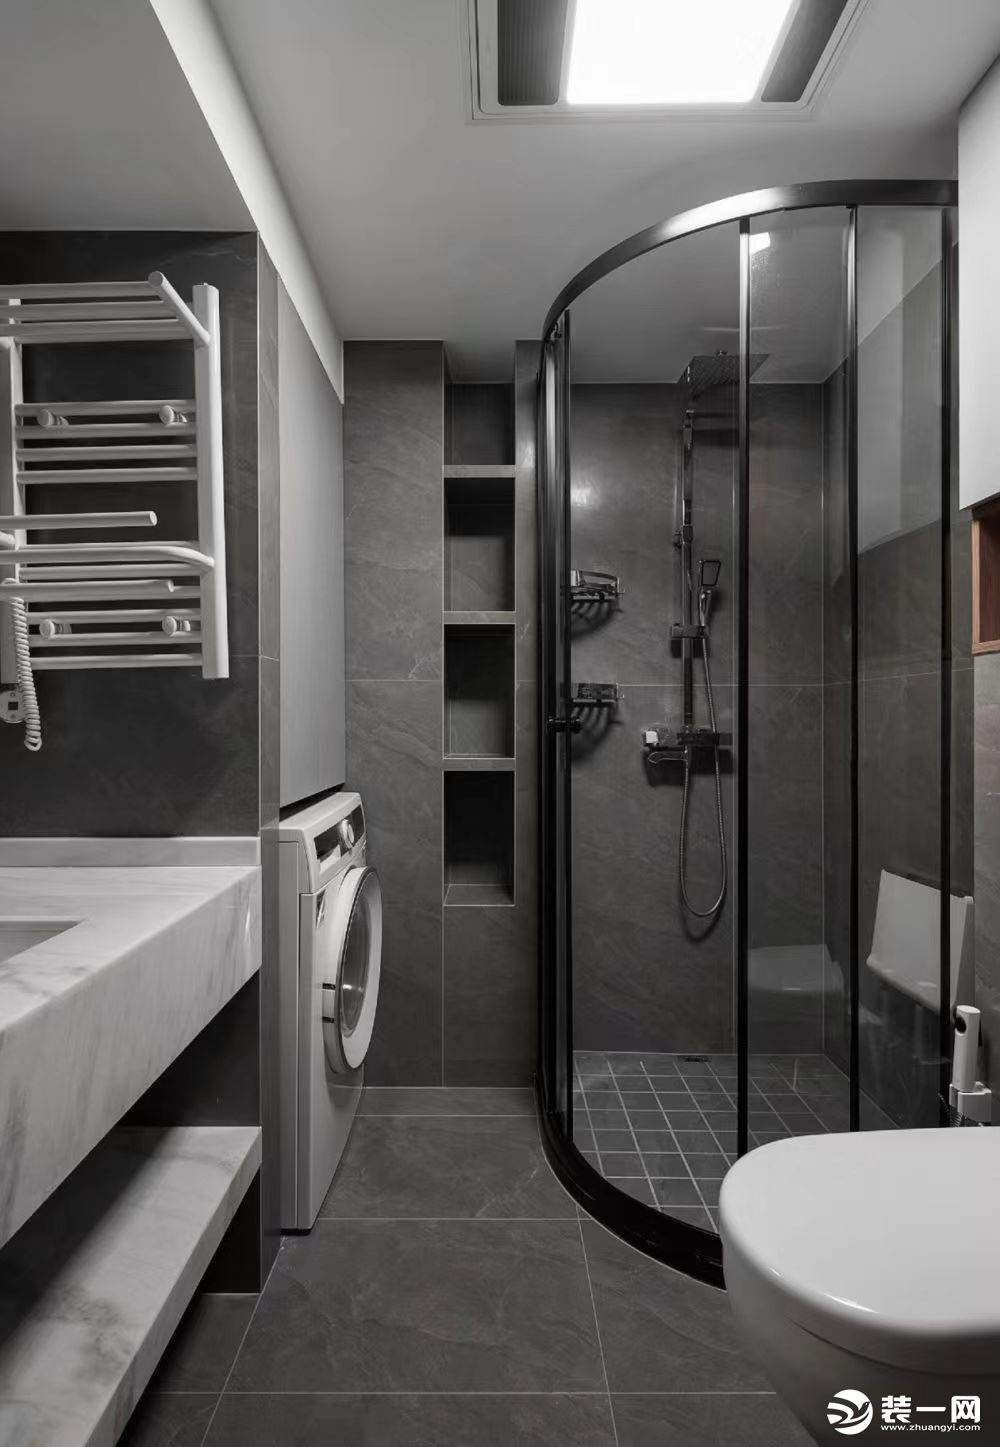 衛生間以黑白灰為主色調，淋浴區選擇弧形的玻璃，相對來說比較節約空間。洗漱臺分成兩層，下層直接是設計的